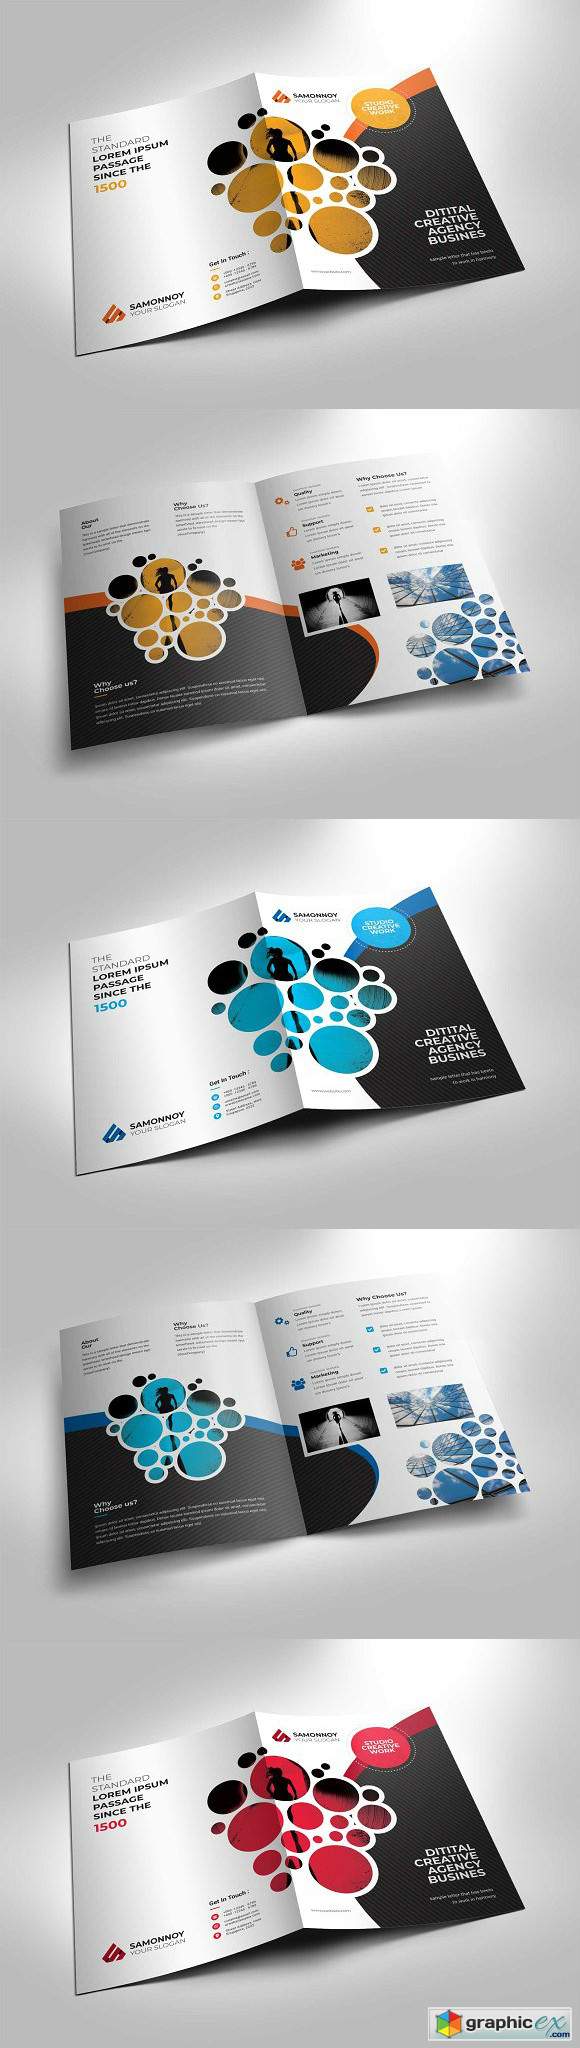 Corporate Bi-fold Brochure Template 2684022